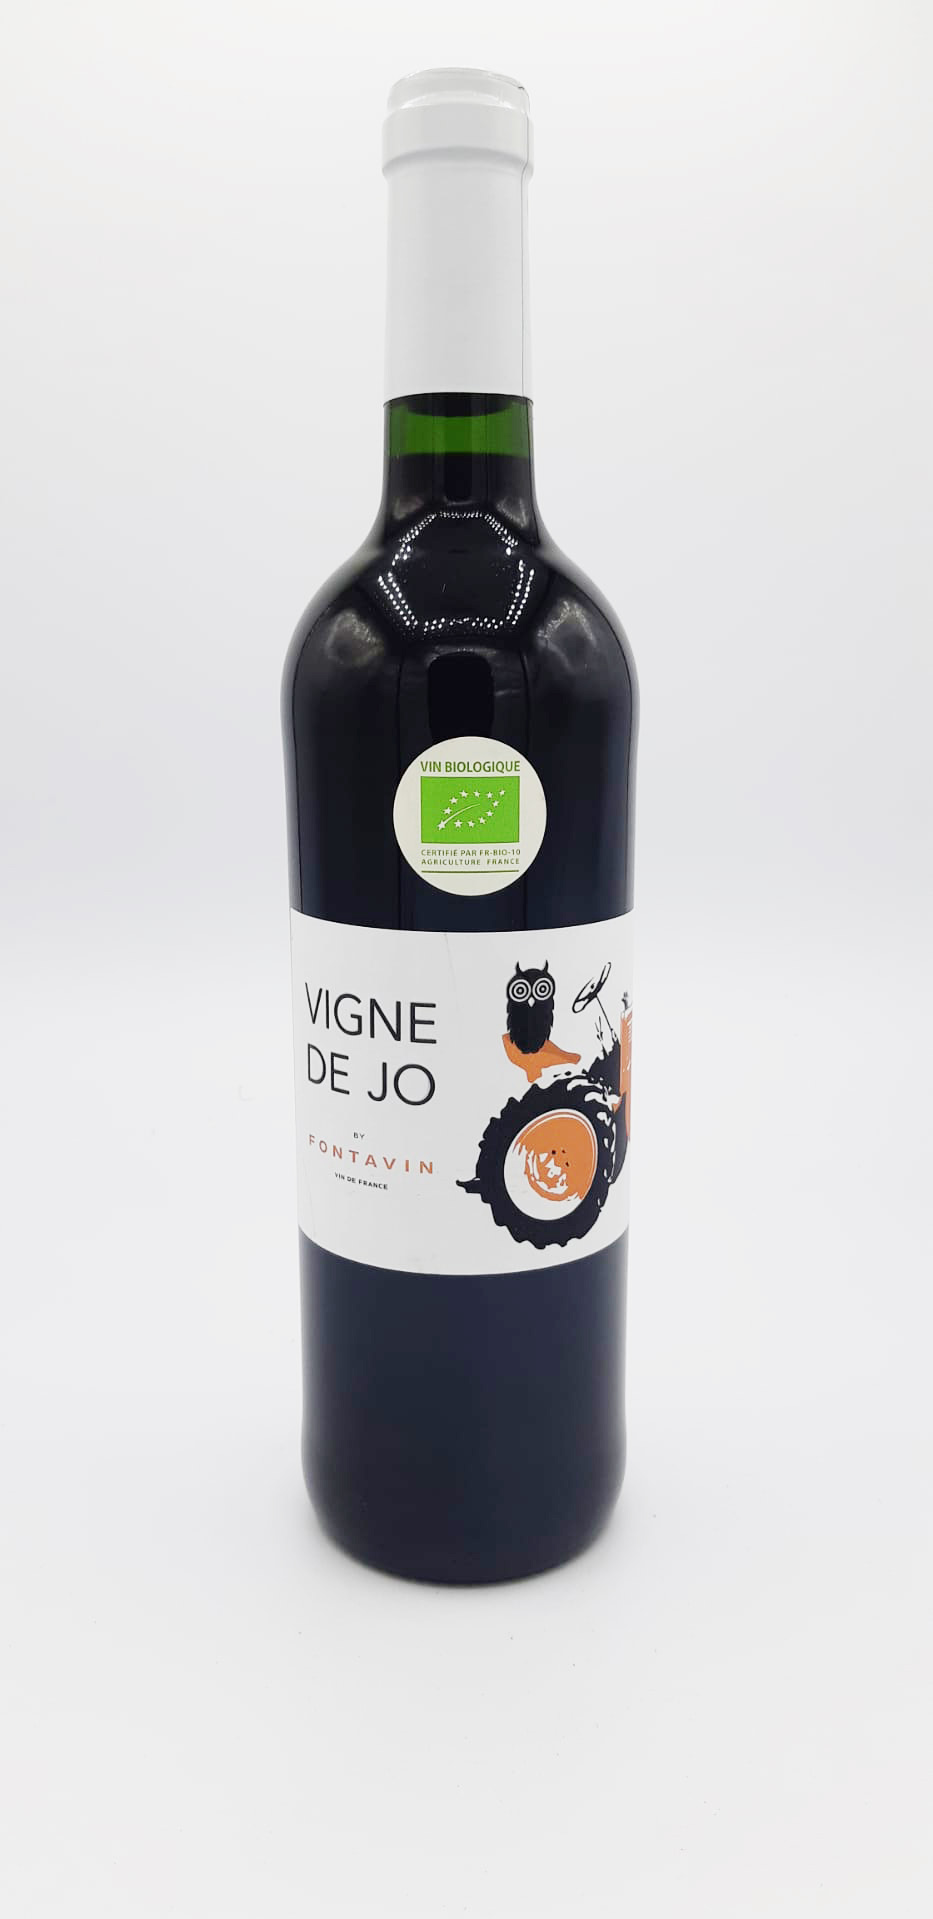 Les Vignes de Jo , Domaine Fontavin 2020